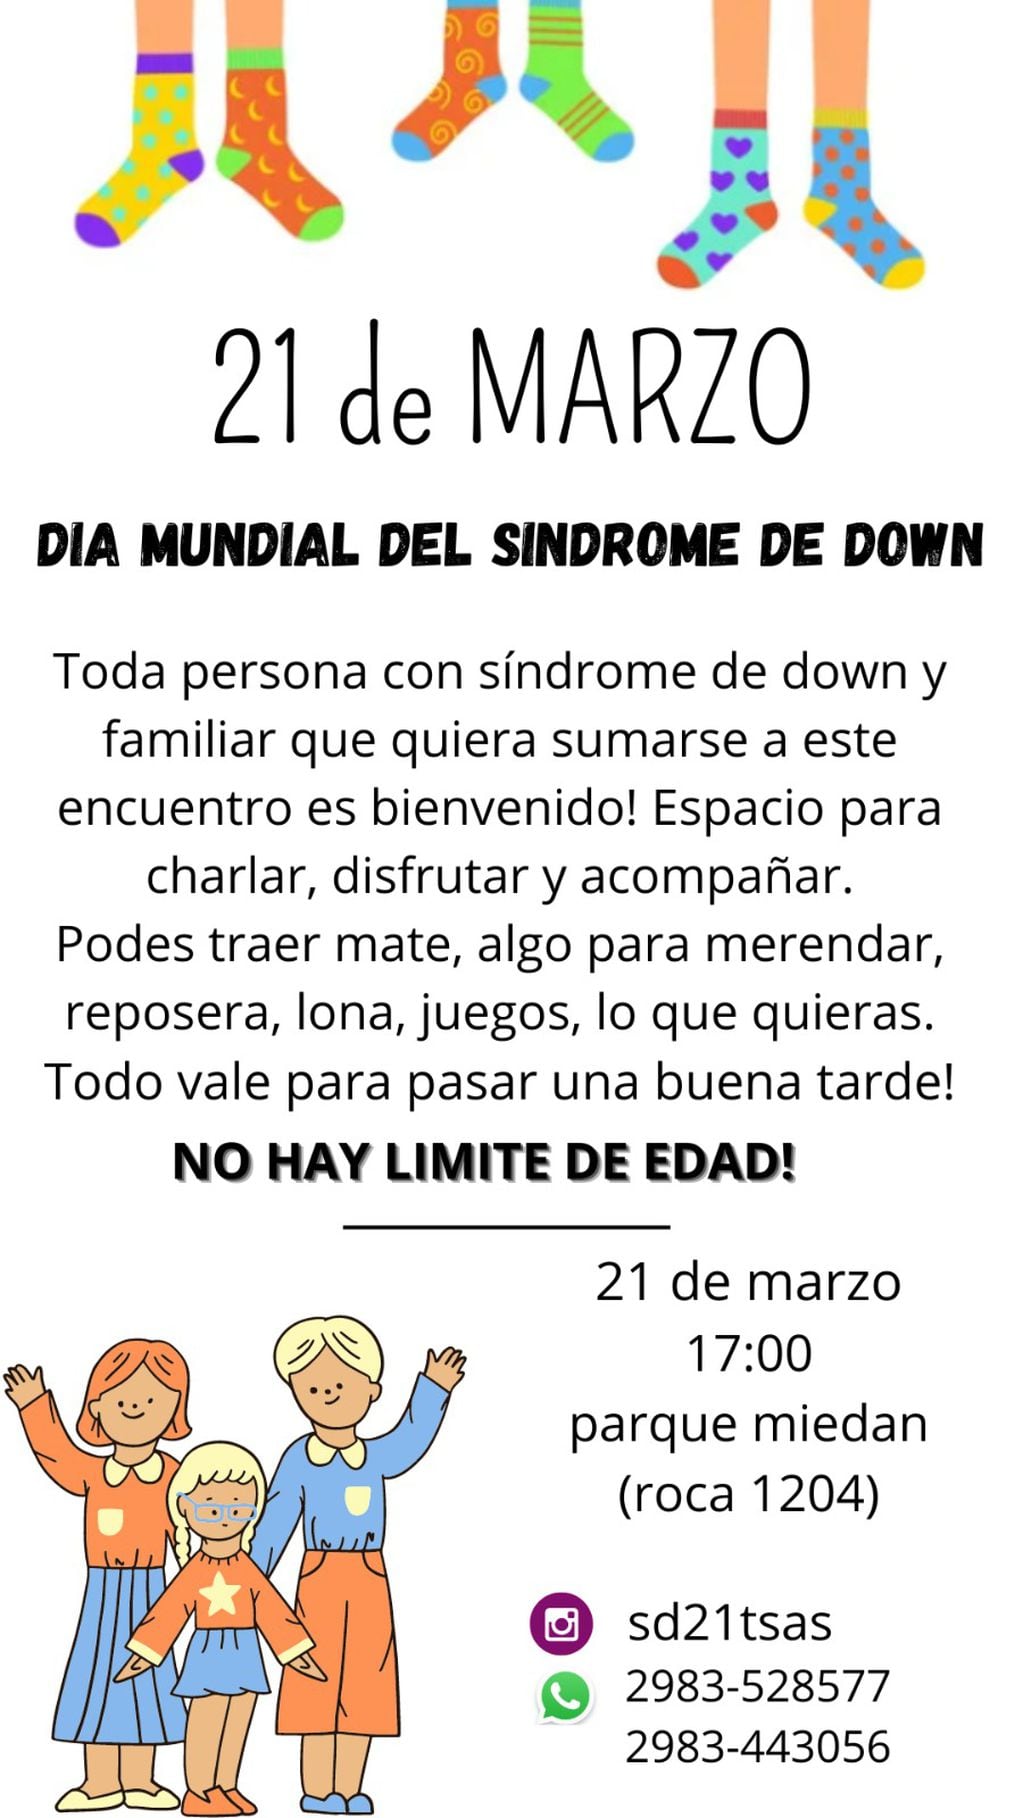 en el Día Mundial del Síndrome de Down habrá actividades en el Parque Miedan